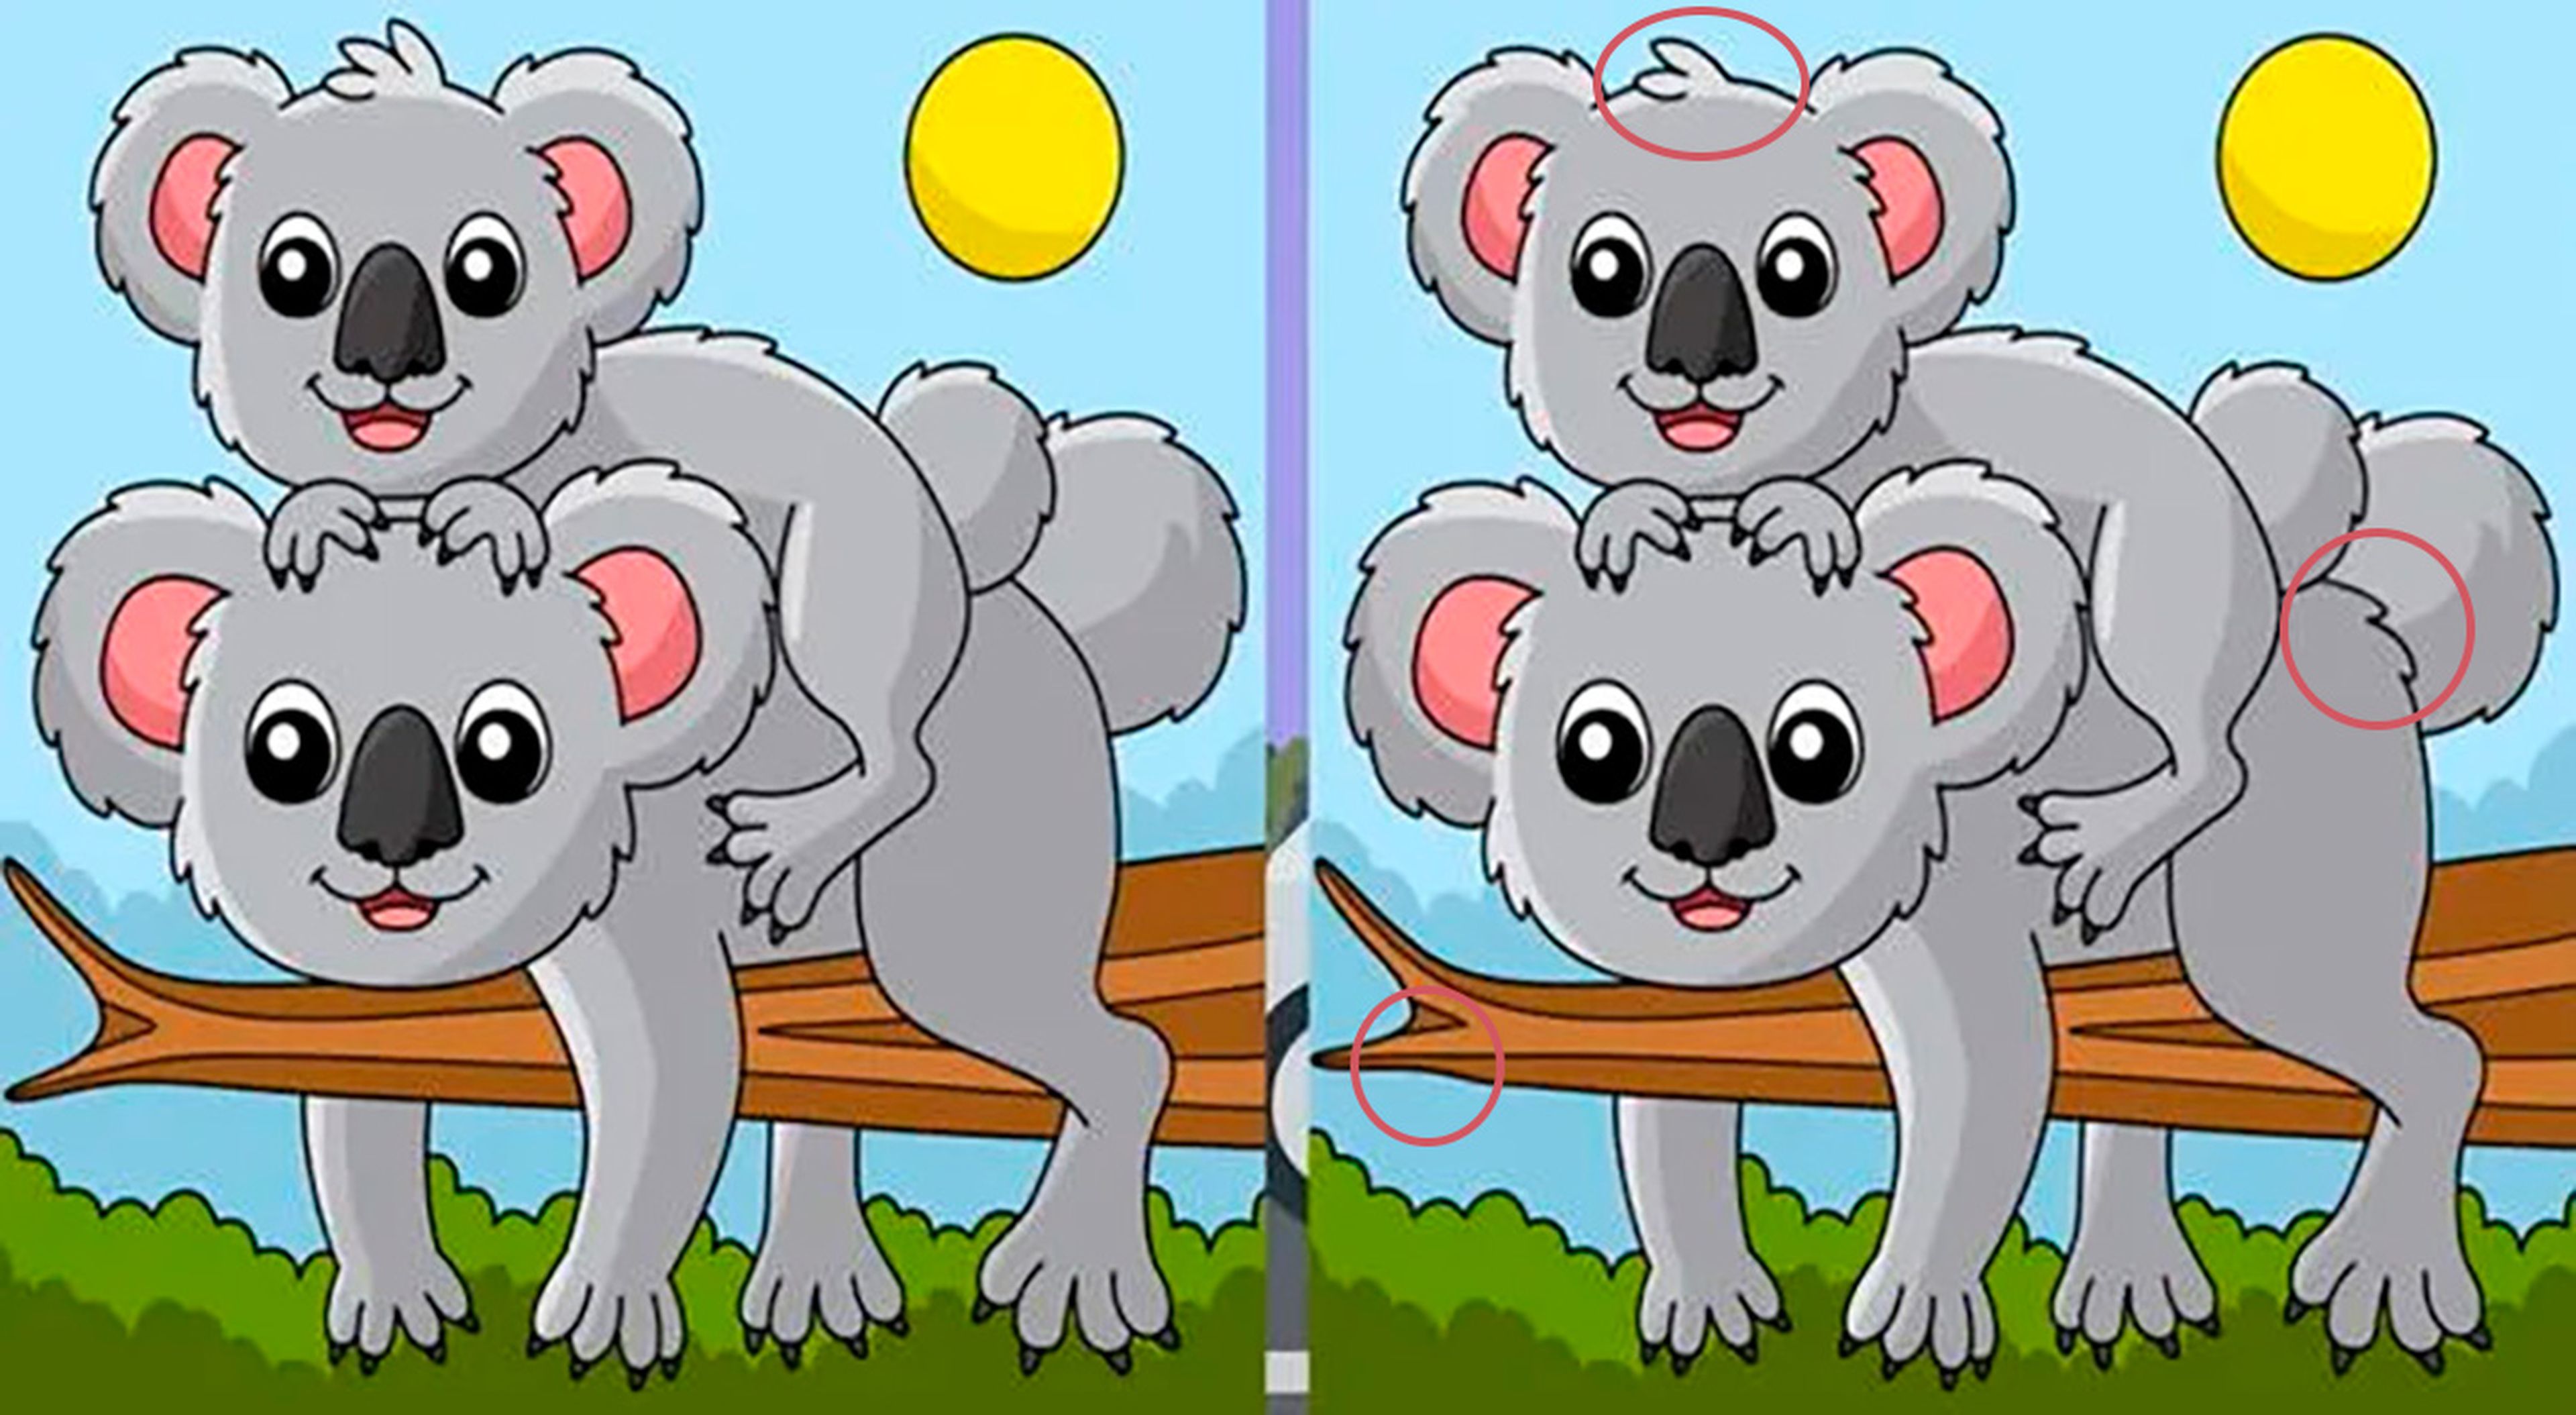 Encuentra las diferencias entre las imagenes de koalas